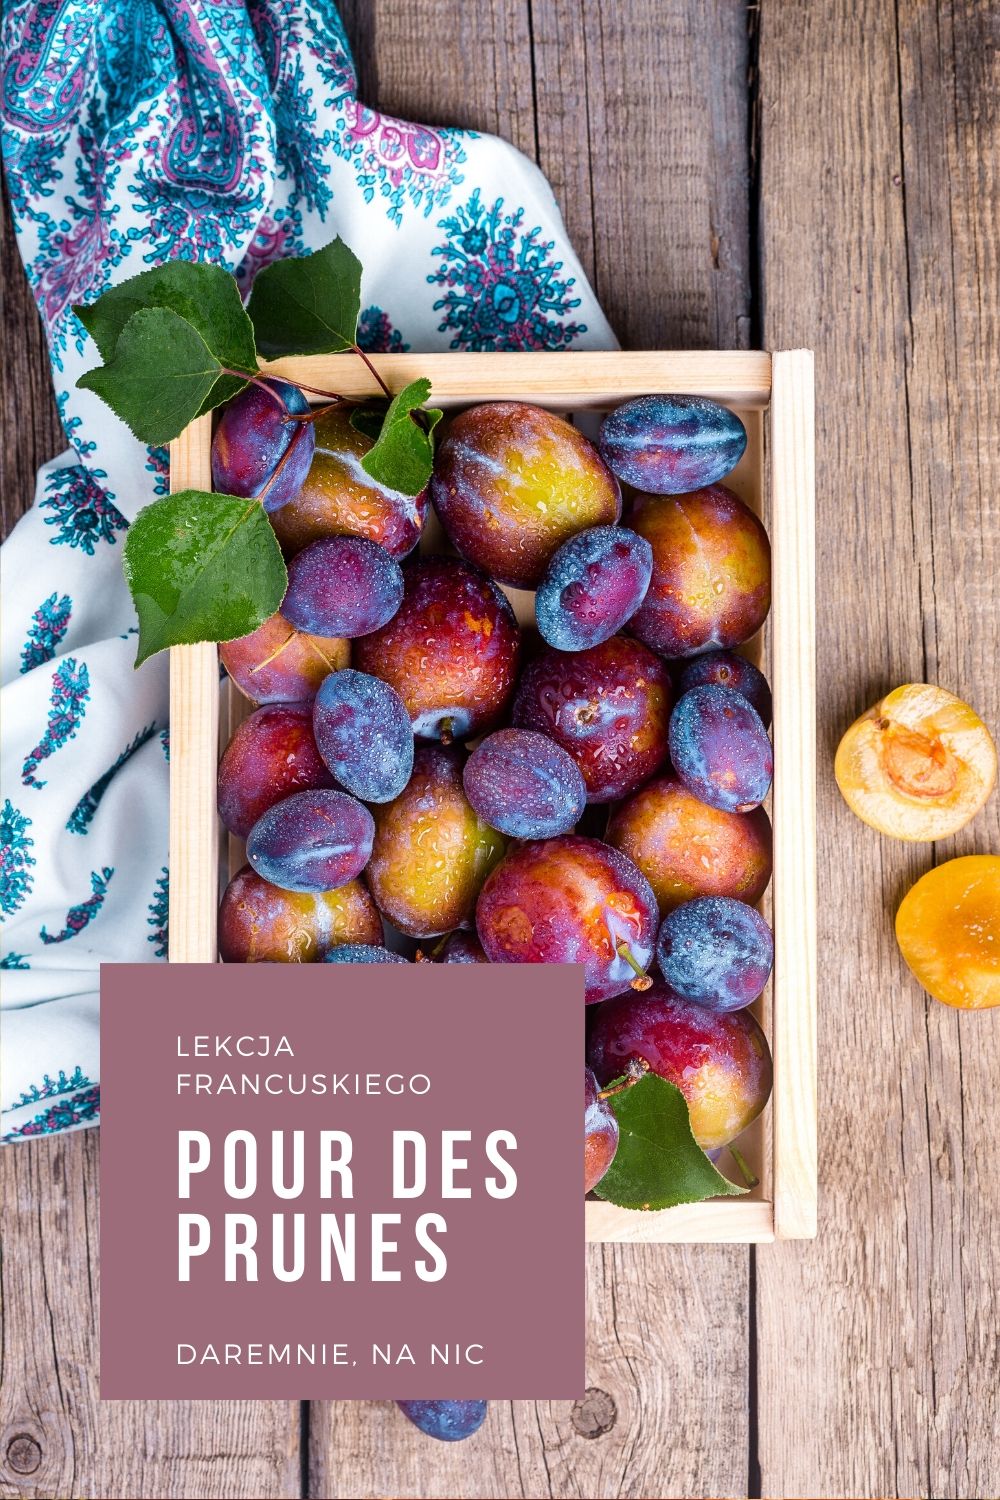 Dlaczego Francuzi mówią: pour des prunes, by powiedzieć że coś zdało się na nic.